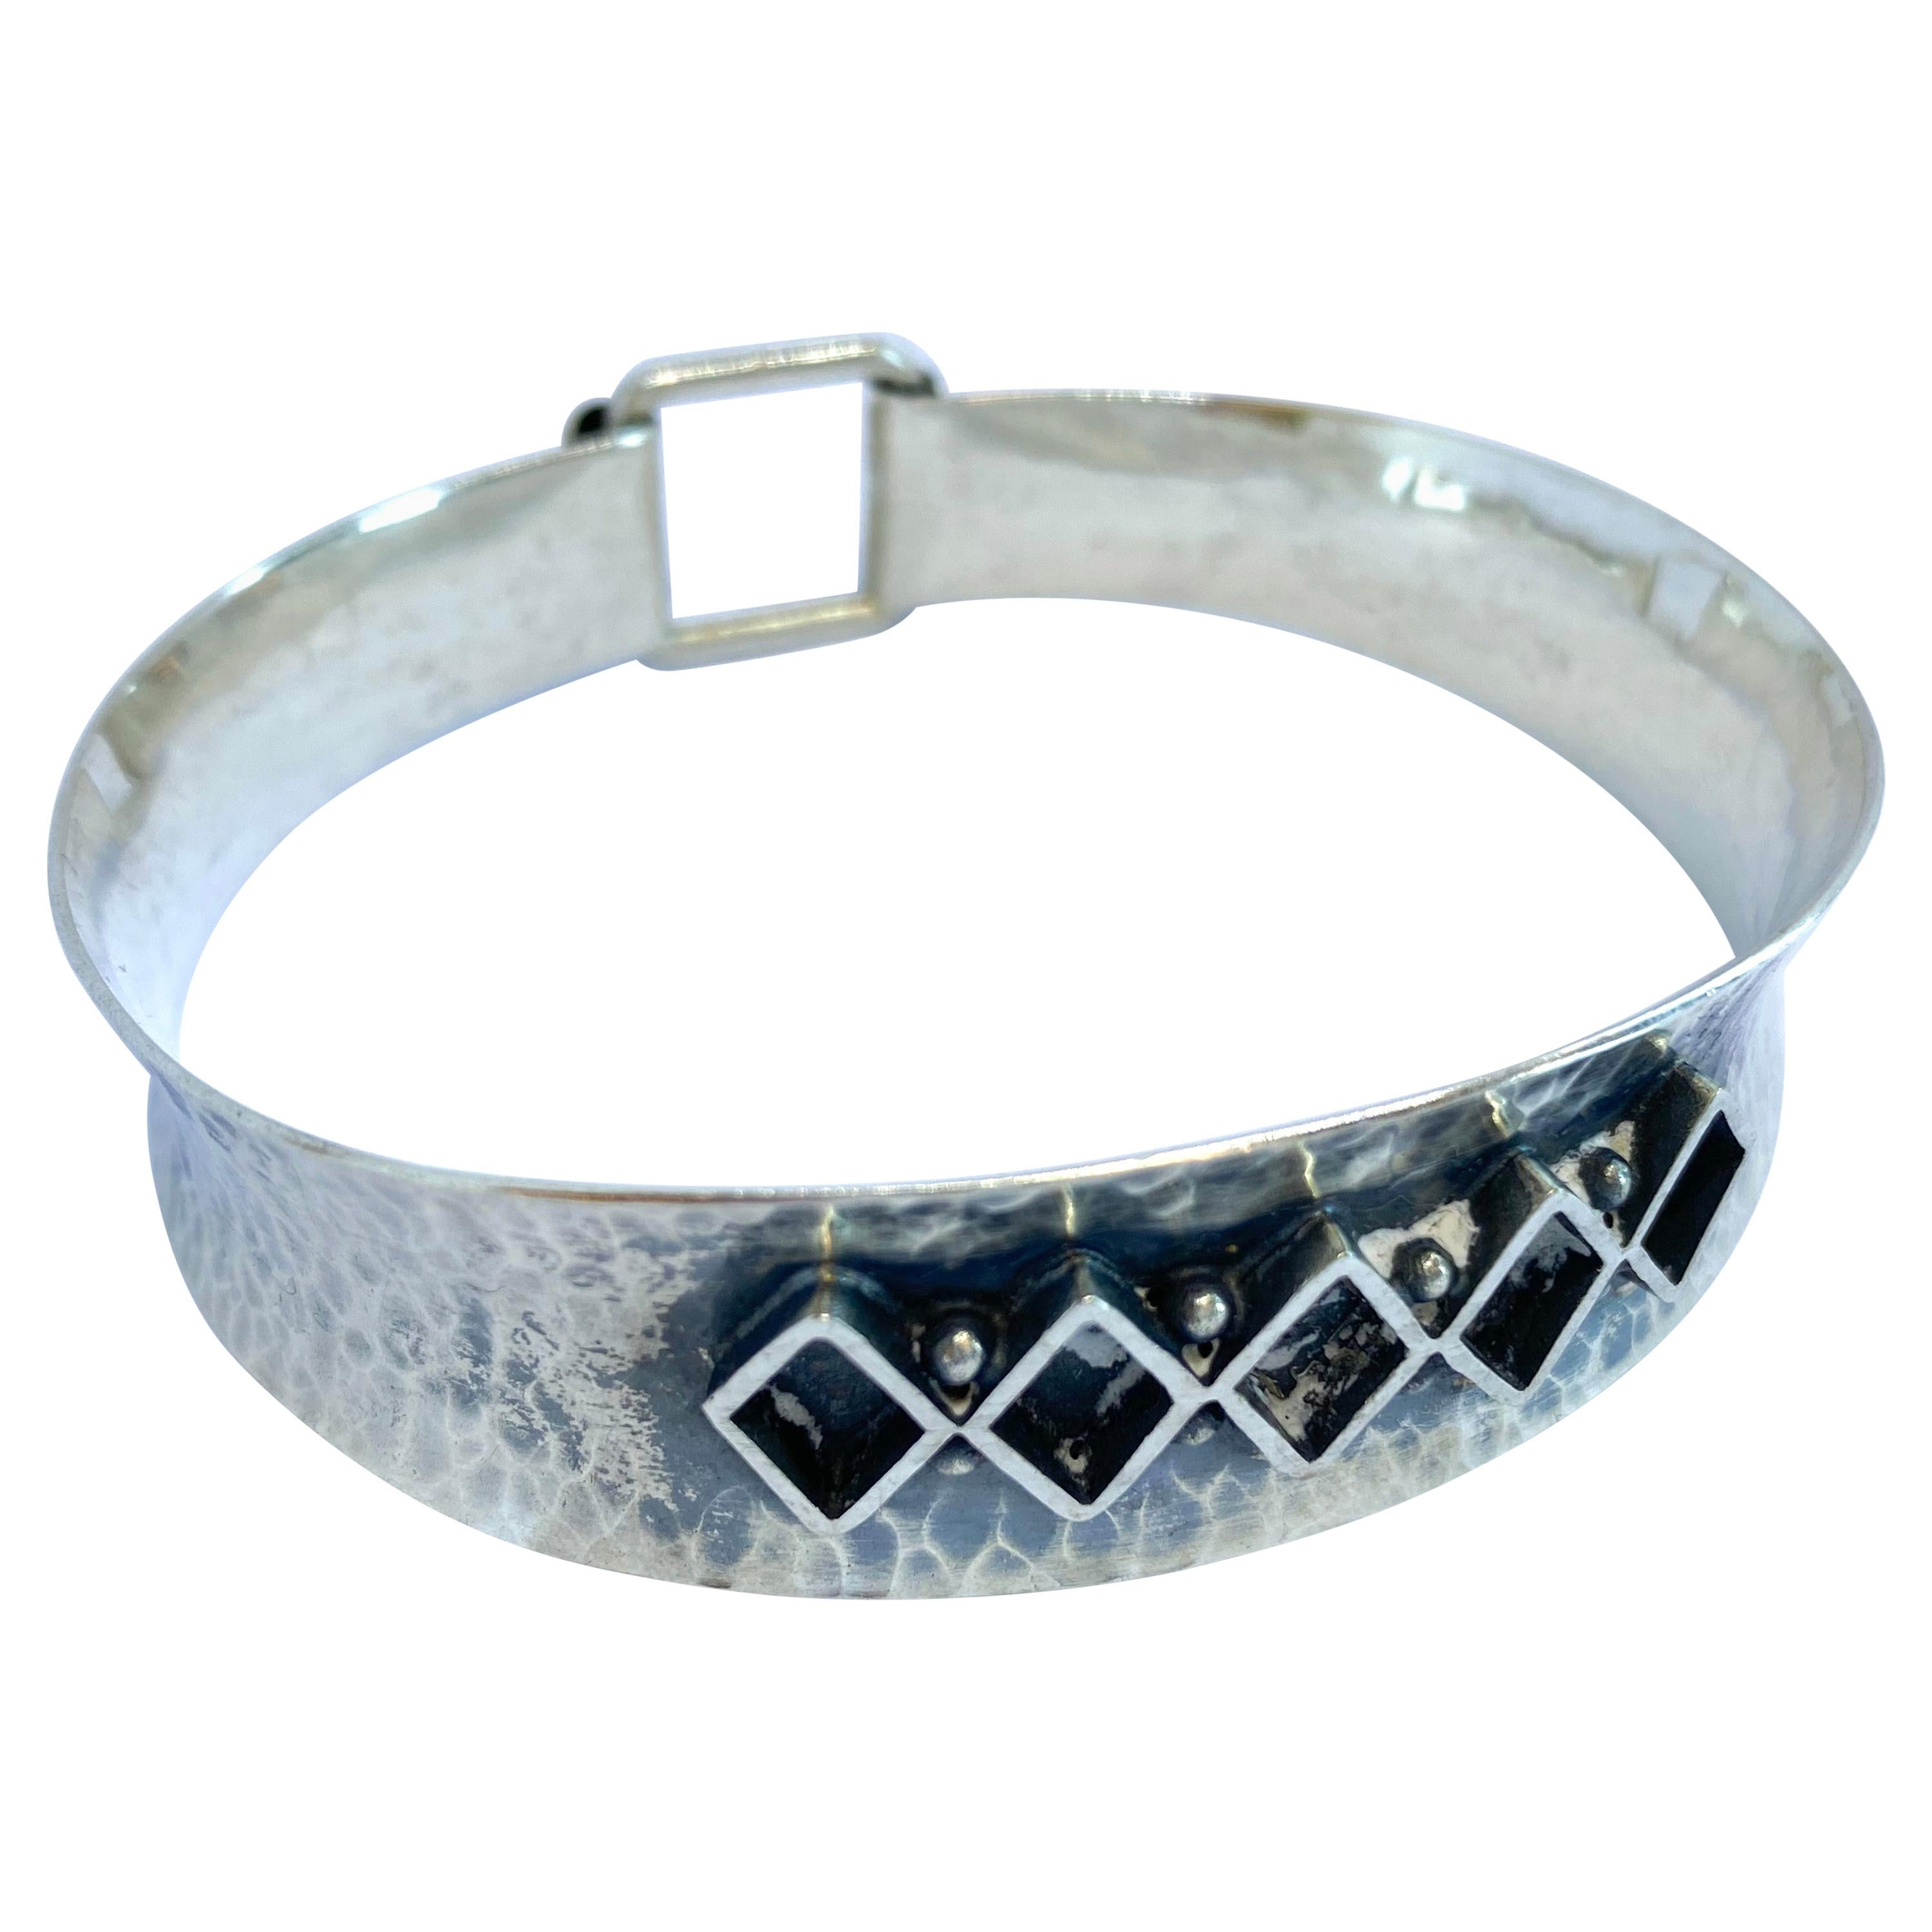 Bracelet Silver Made in Finland V. Hamara